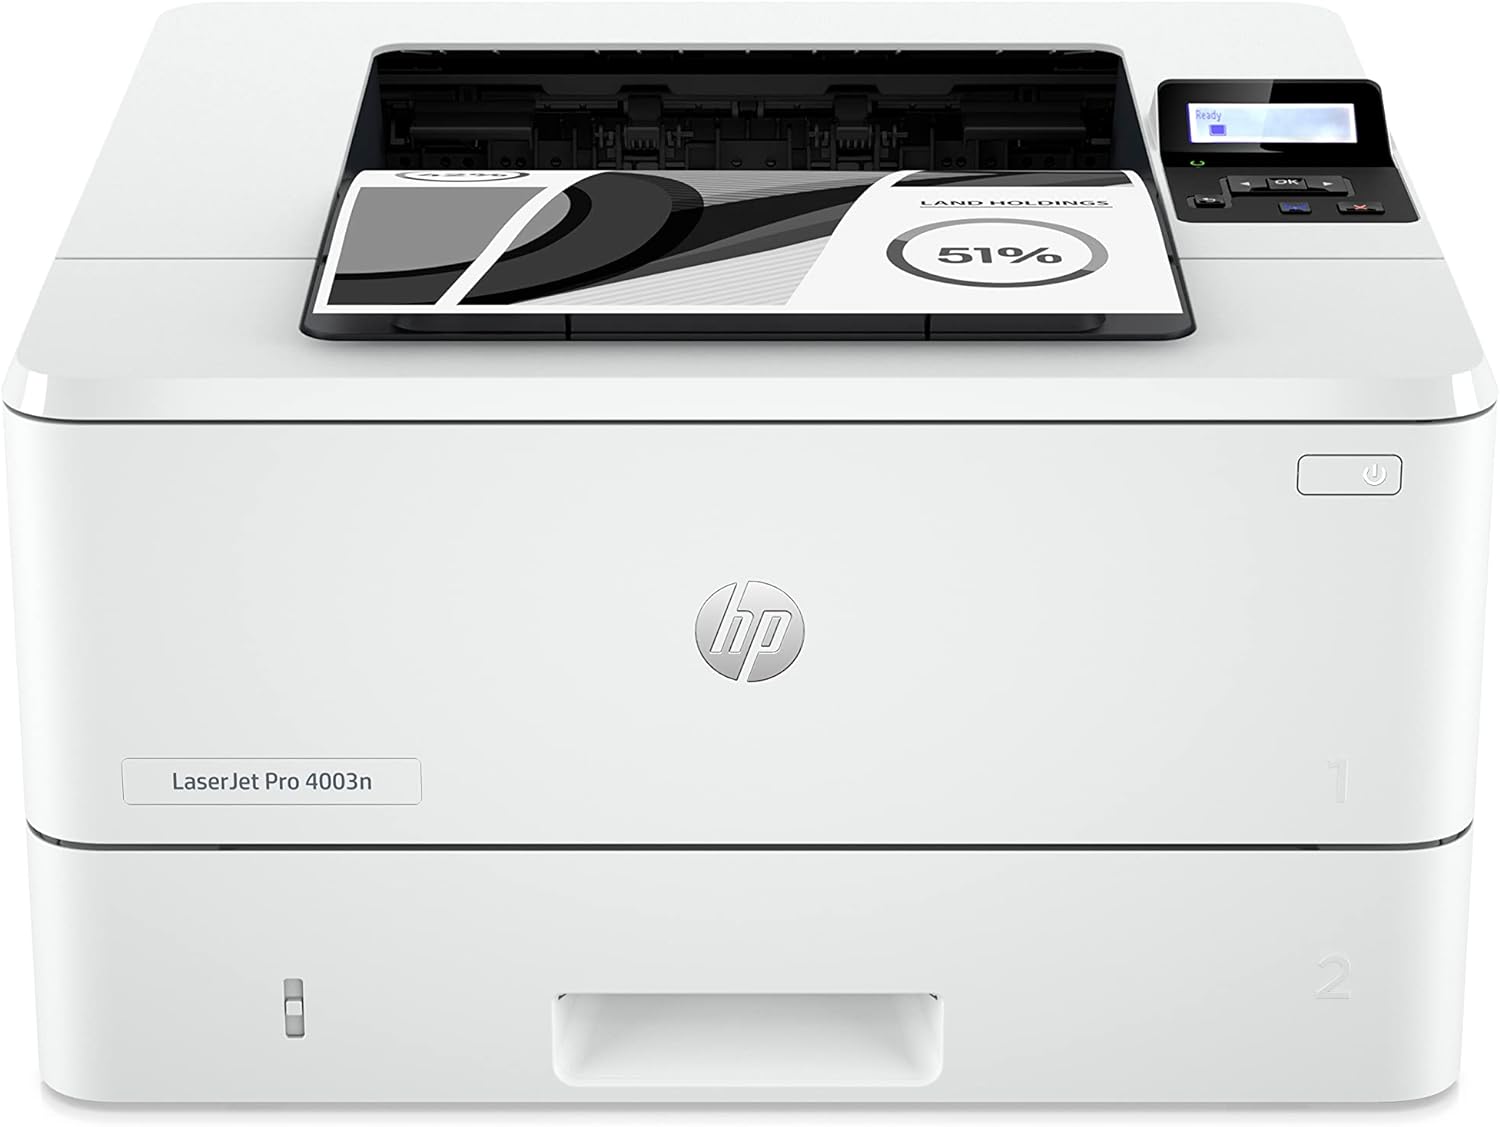 HP LaserJet Pro 4003n Wireless Printer, White - 2Z611A